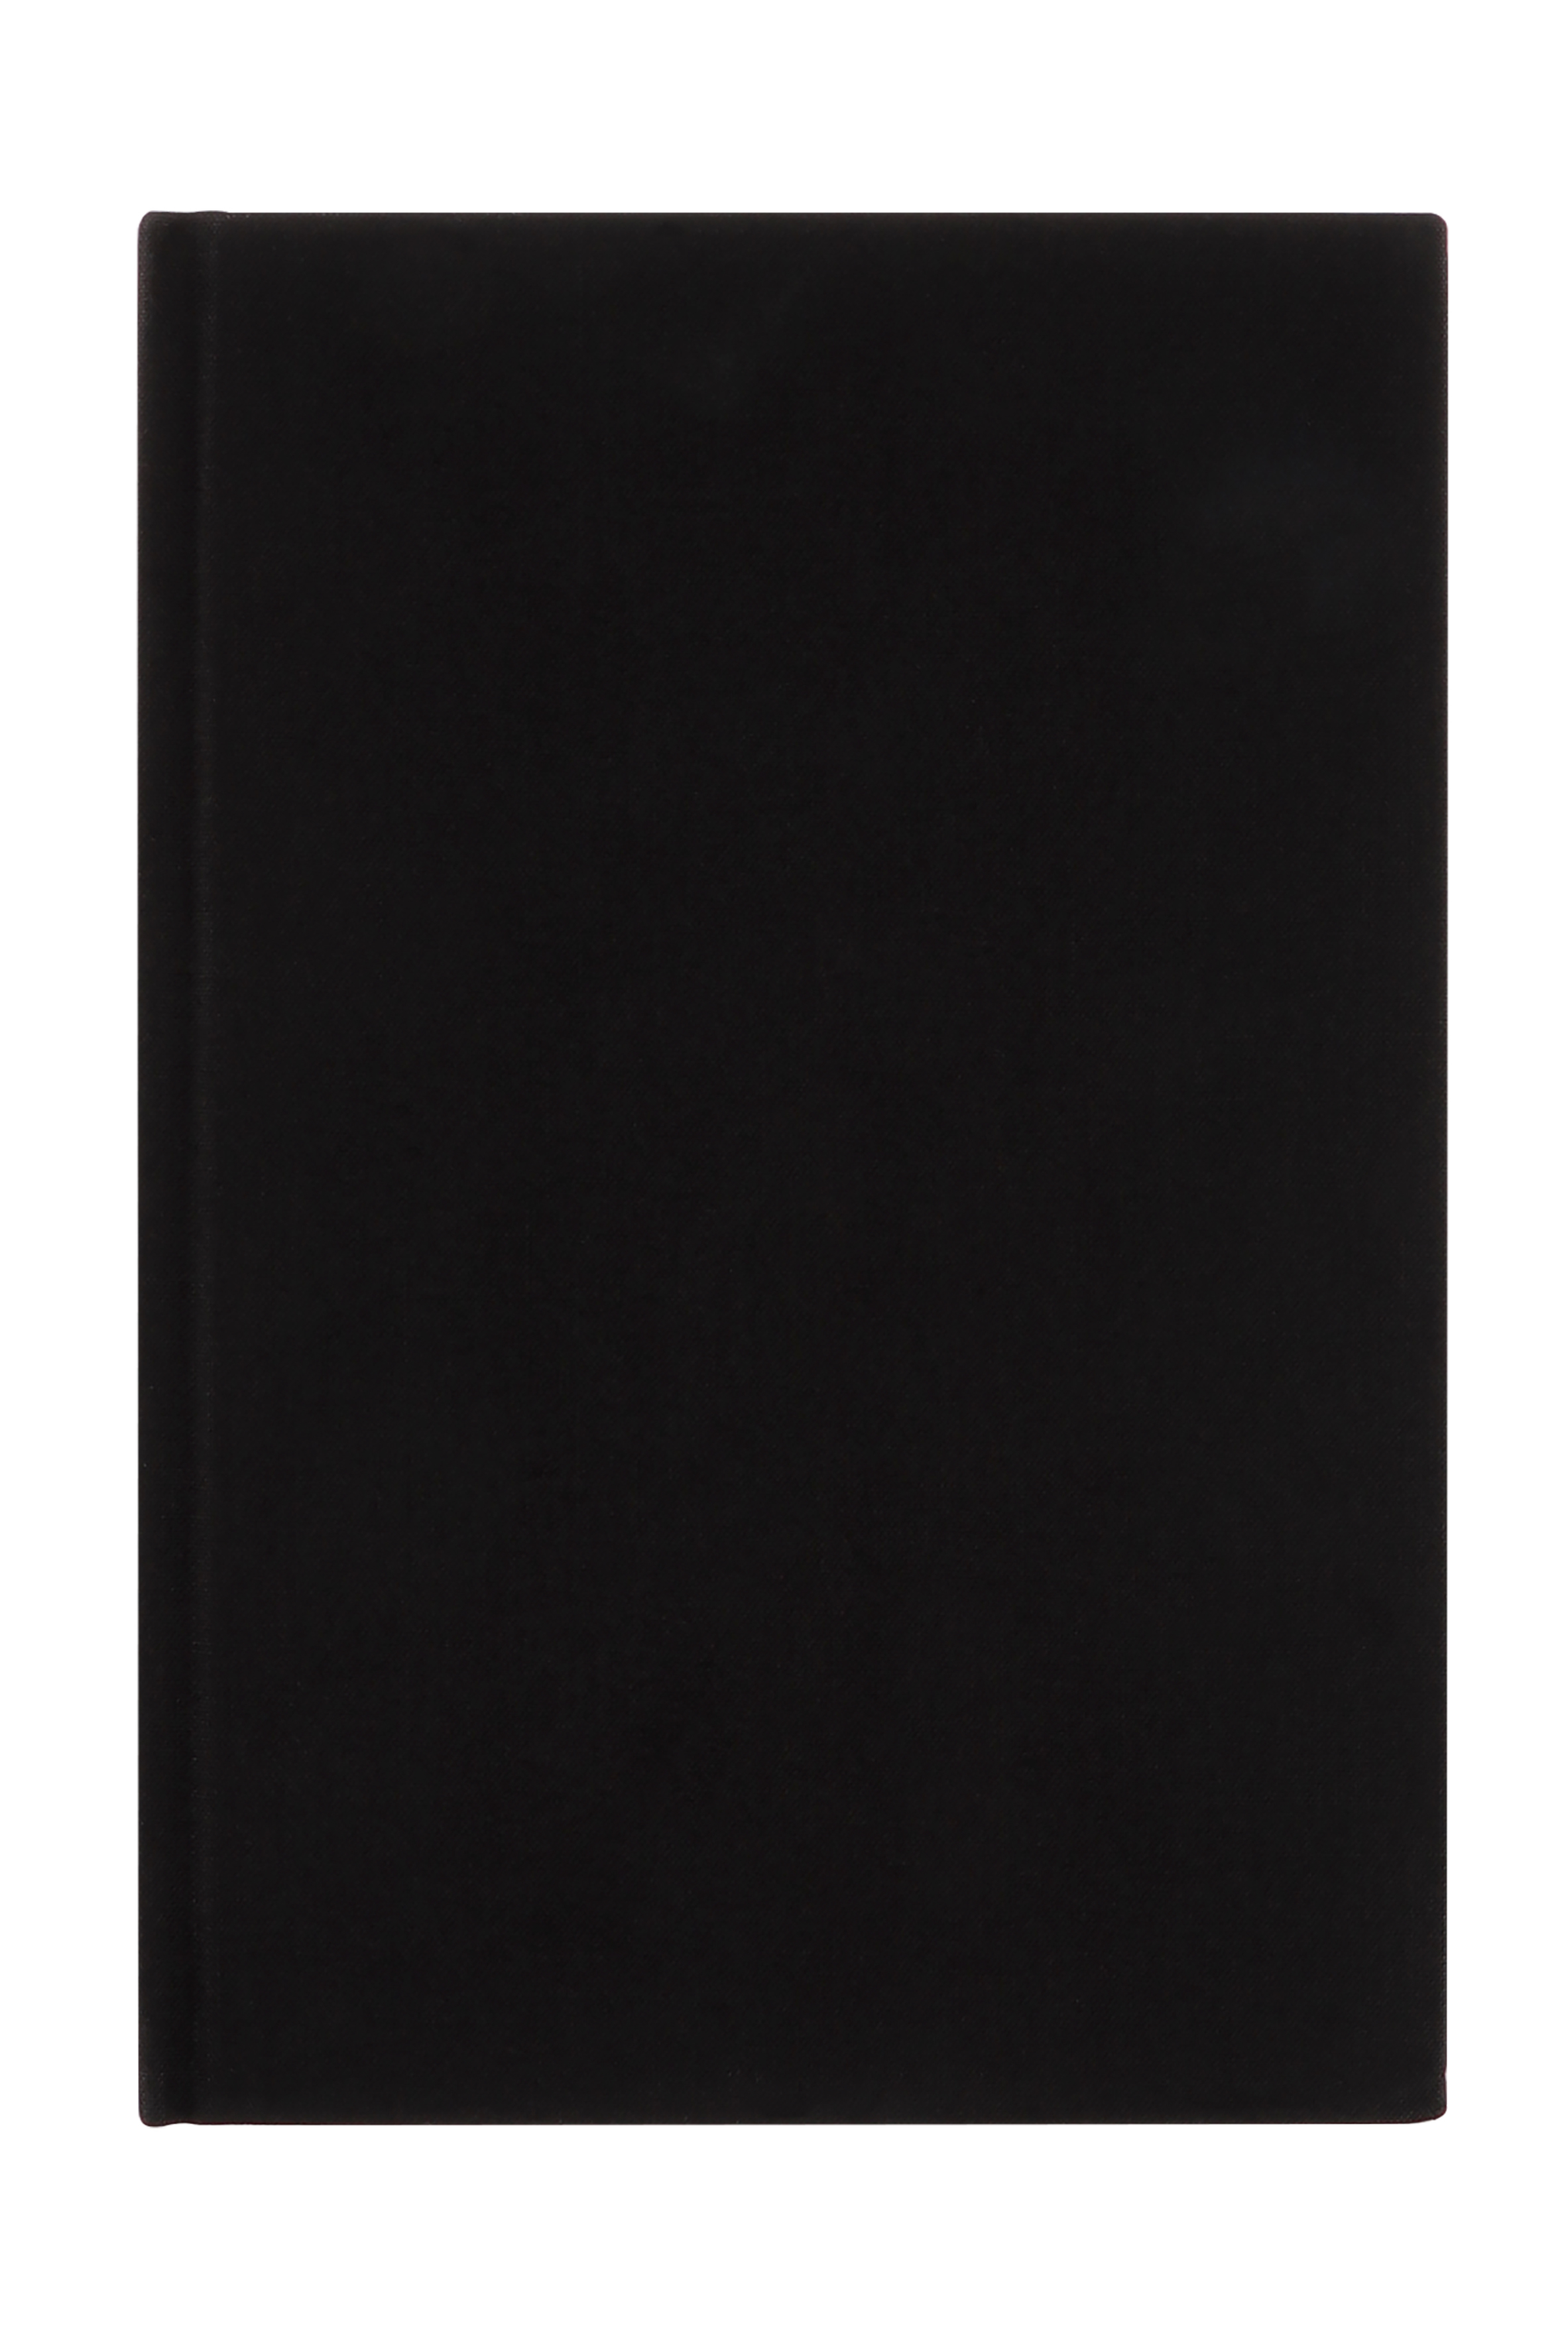 NEUTRAL Carnet A5 664041 noir, quadrillé 96 feuilles noir, quadrillé 96 feuilles